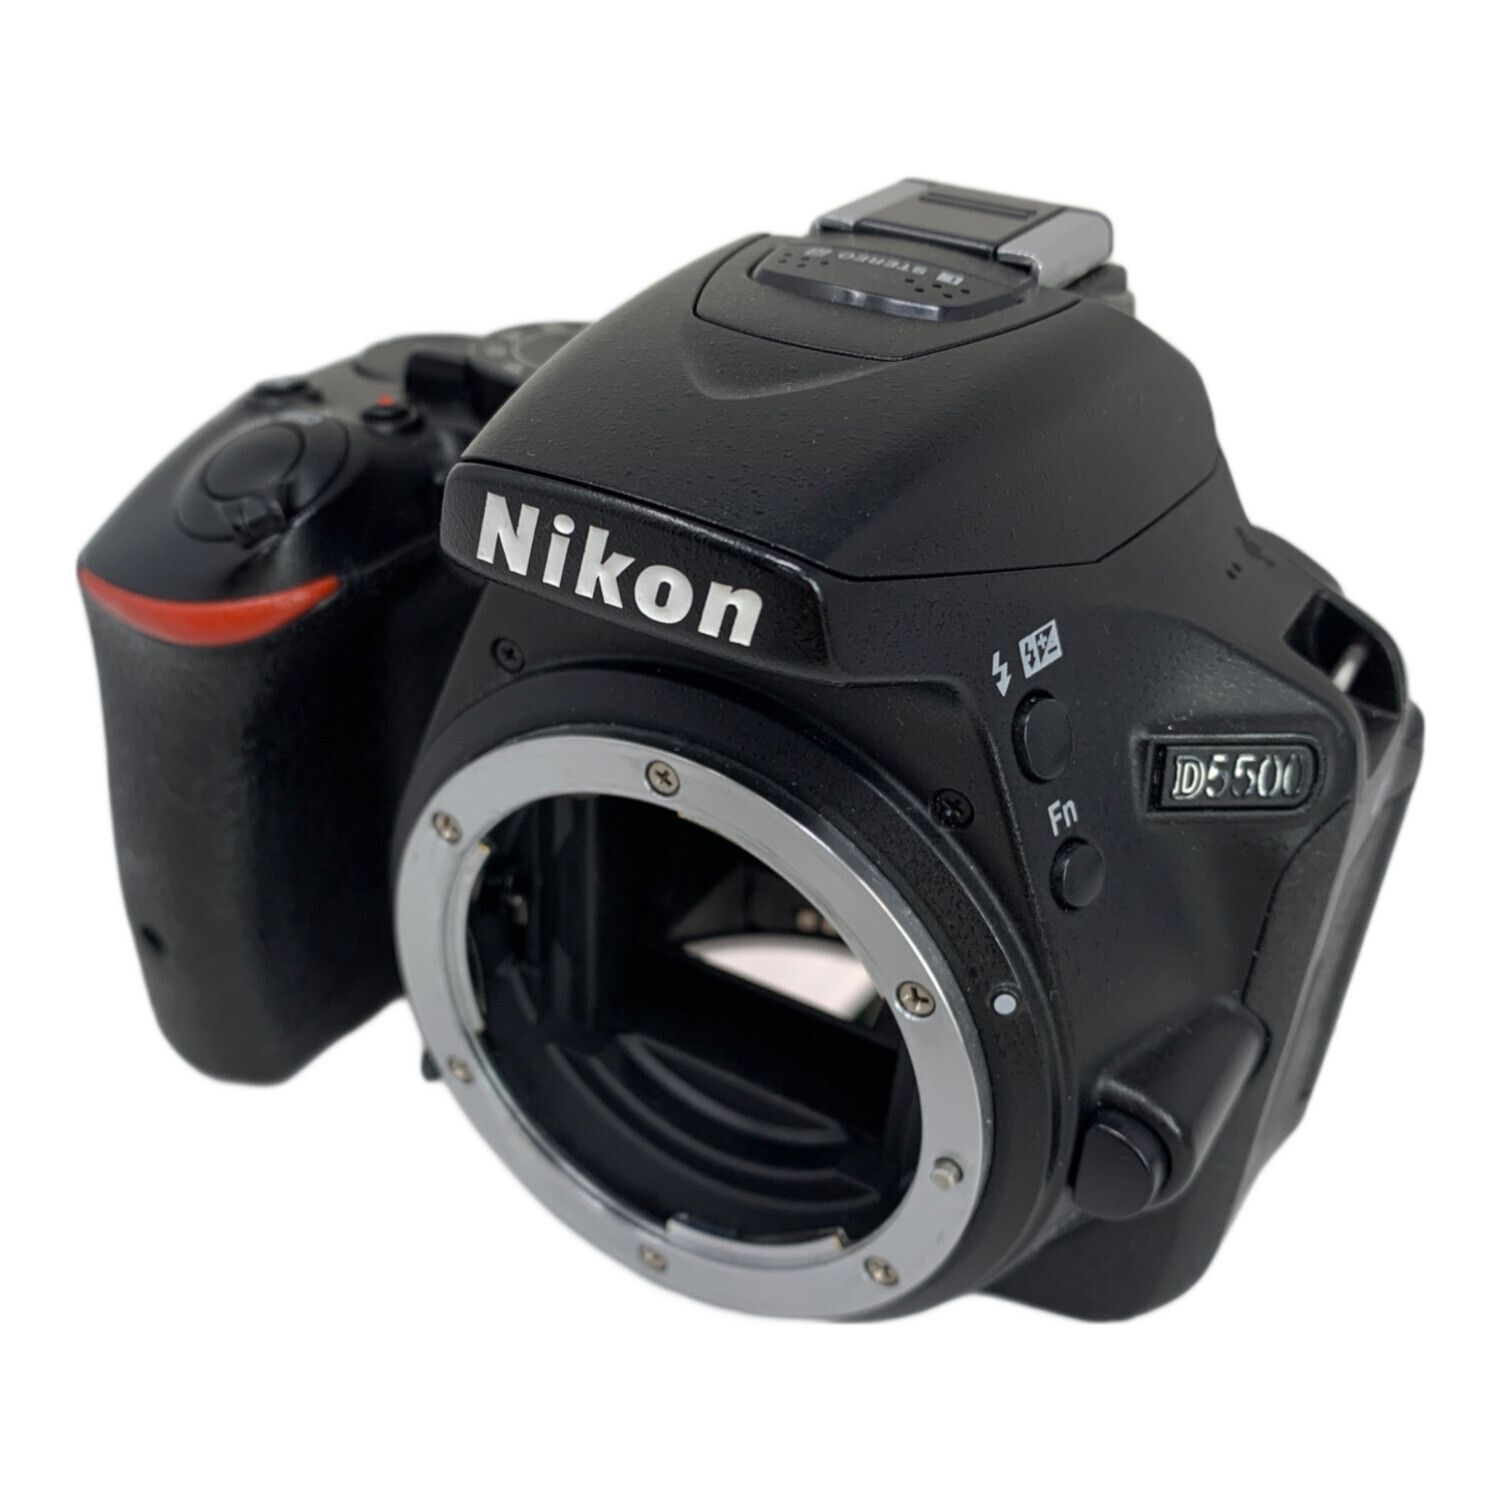 Nikon (ニコン) デジタル一眼レフカメラ ボディのみ ※ファインダーパーツ欠品 ※ファインダー内ホコリ有 D5500 2416万画素 APS-C  専用電池 SDXCカード対応 2118973｜トレファクONLINE